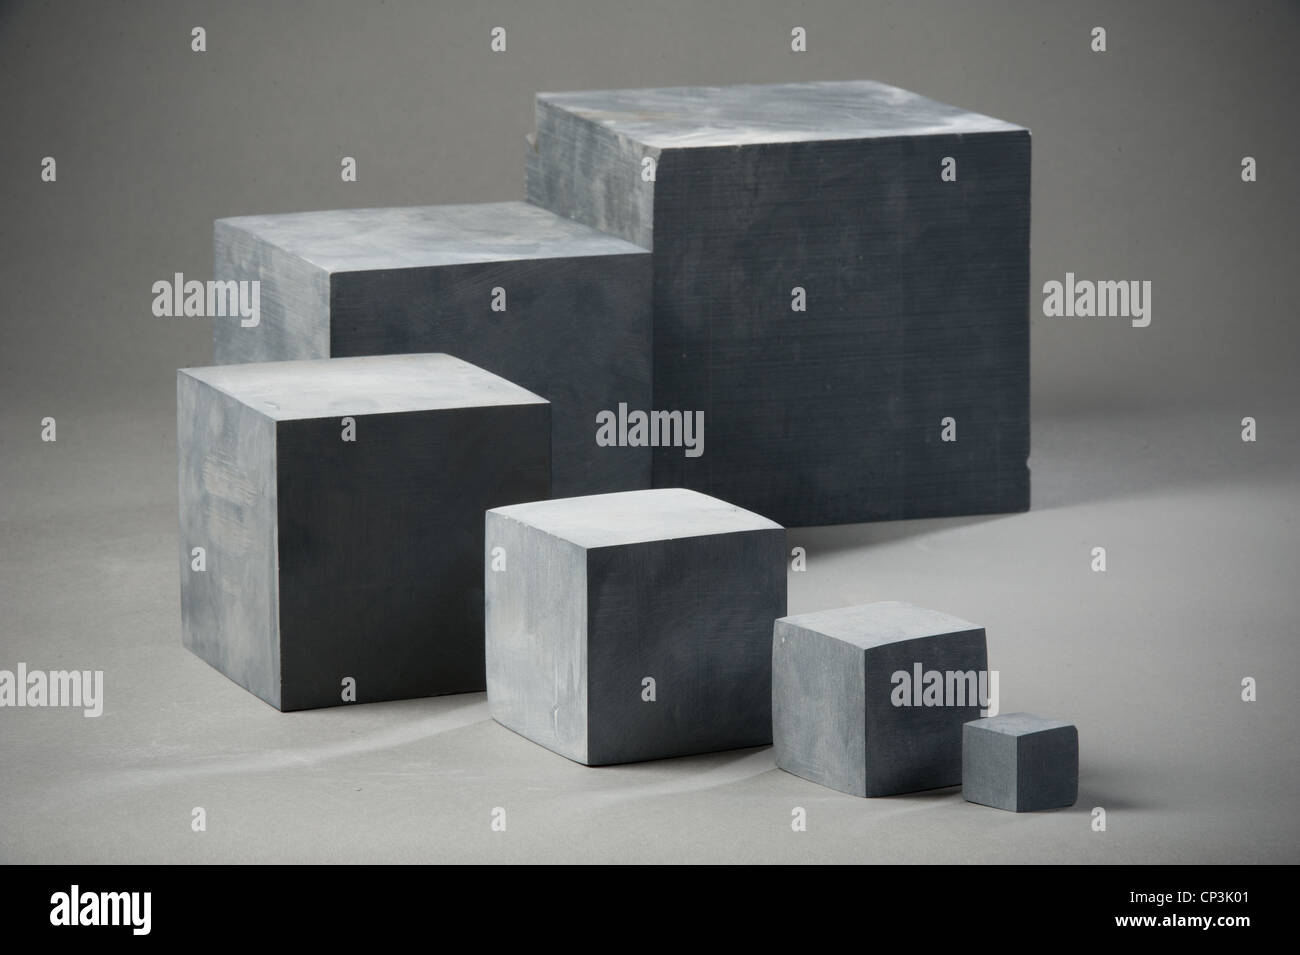 Les blocs en pierre organisé du plus grand au plus petit Banque D'Images